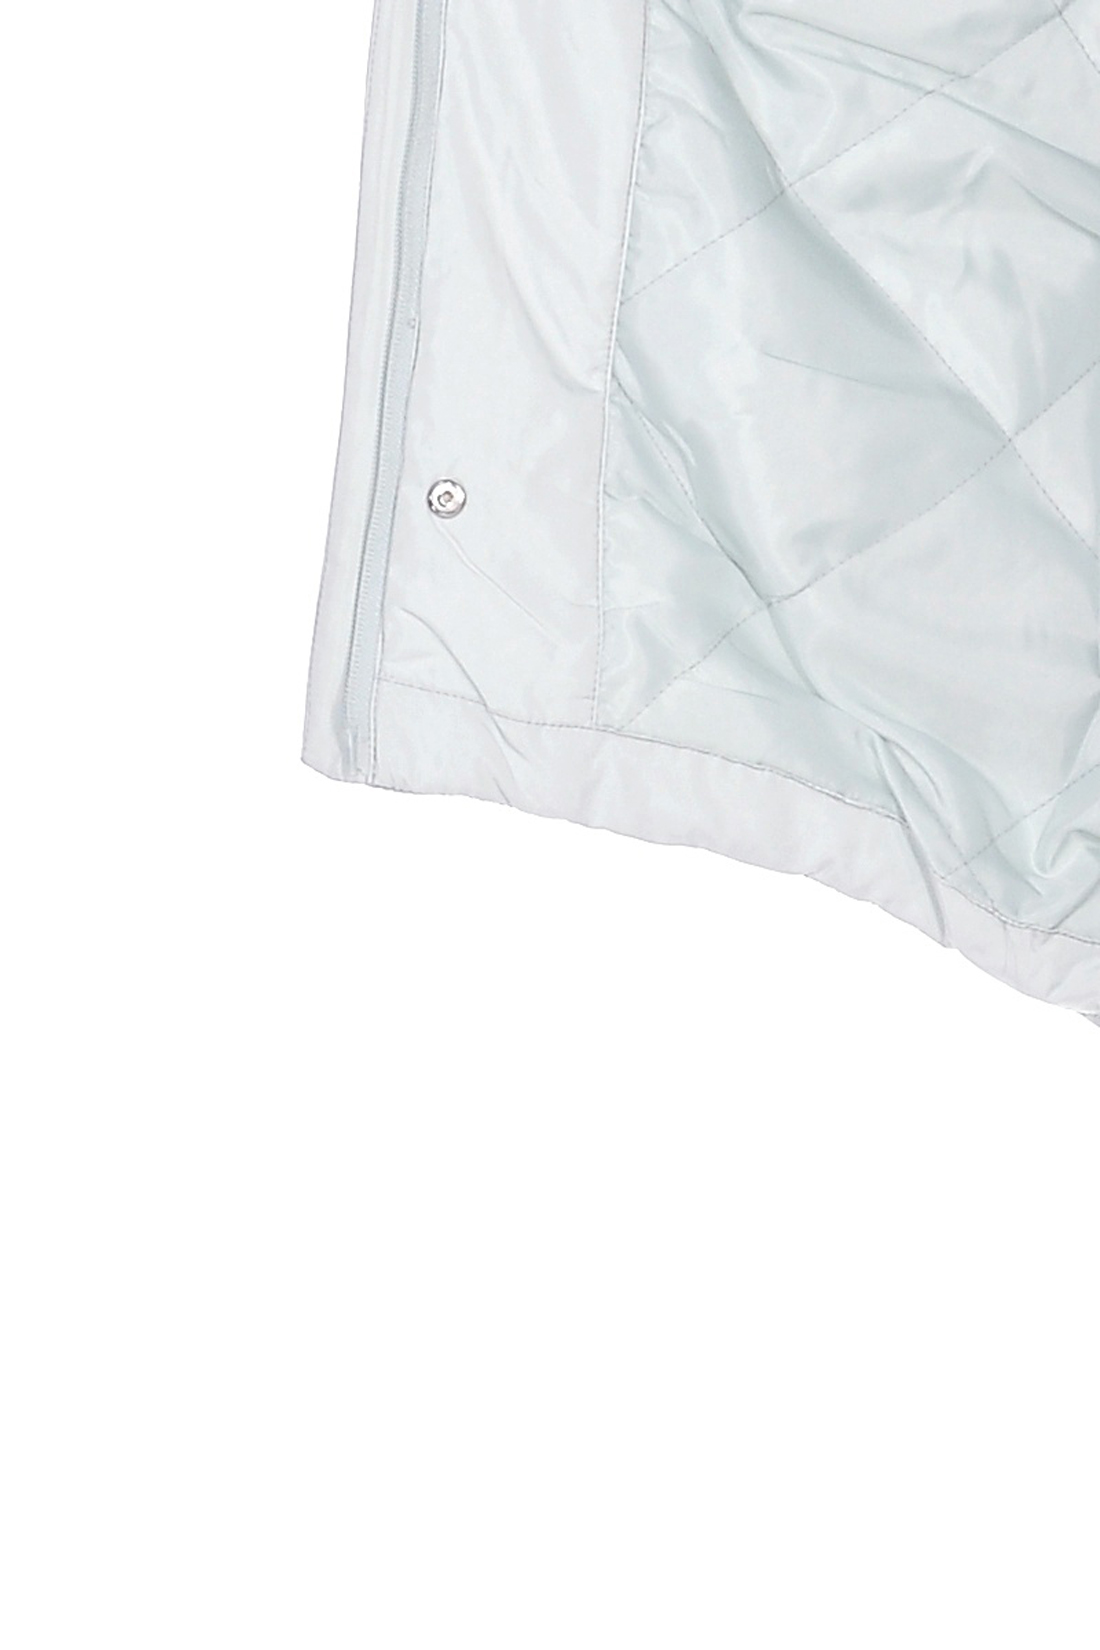 Куртка-парка с длинной спинкой (арт. baon B039055), размер XL, цвет зеленый Куртка-парка с длинной спинкой (арт. baon B039055) - фото 4